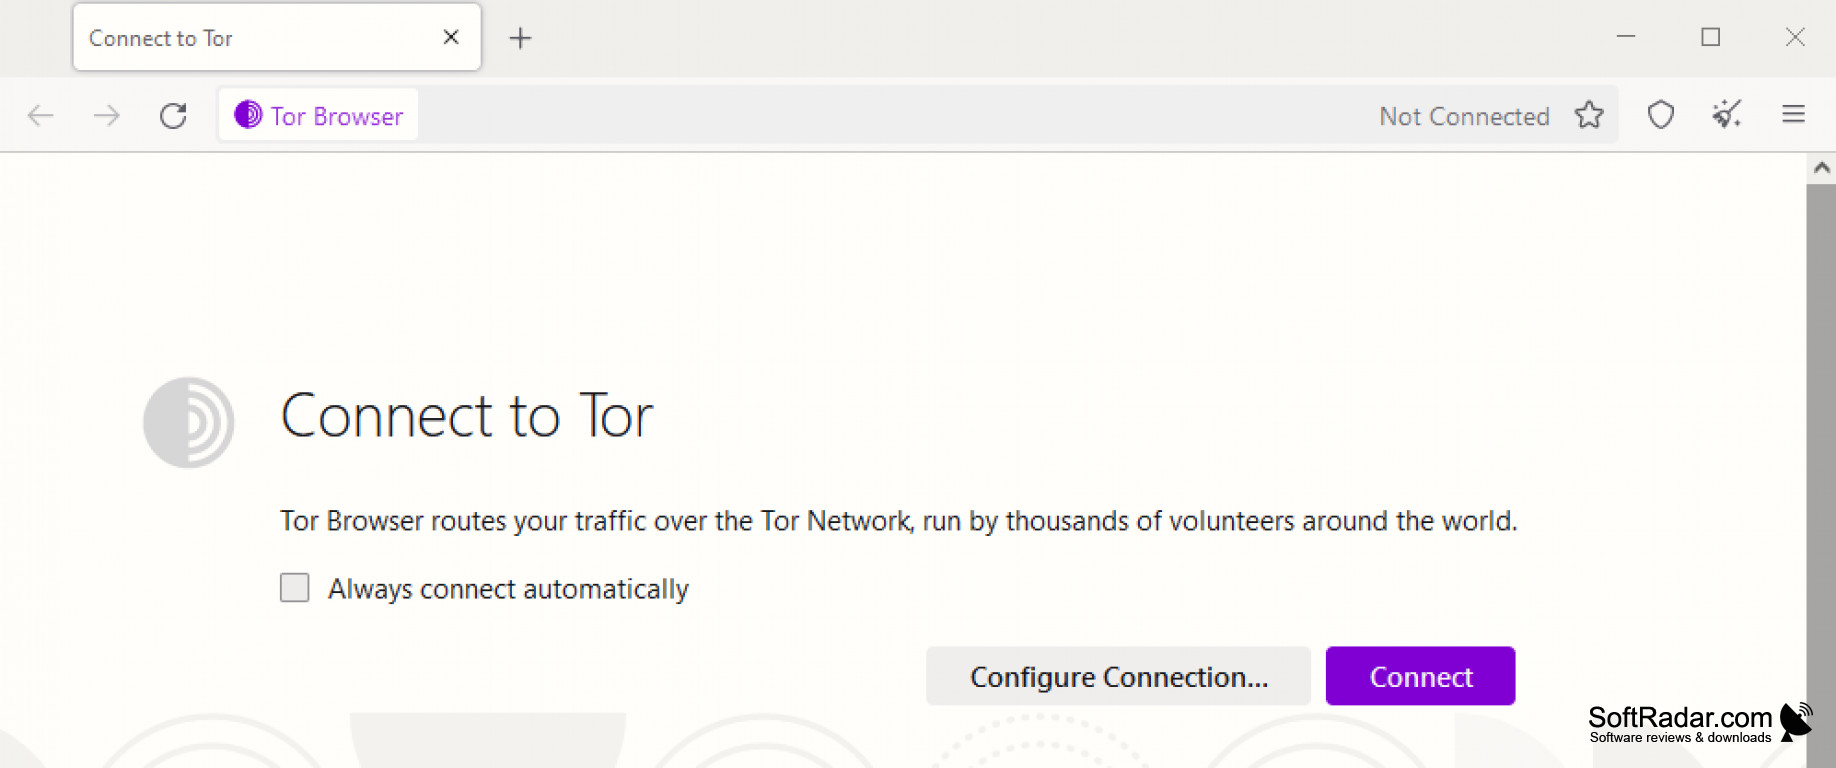 Tor browser a telecharger mega2web что дает браузер тор mega